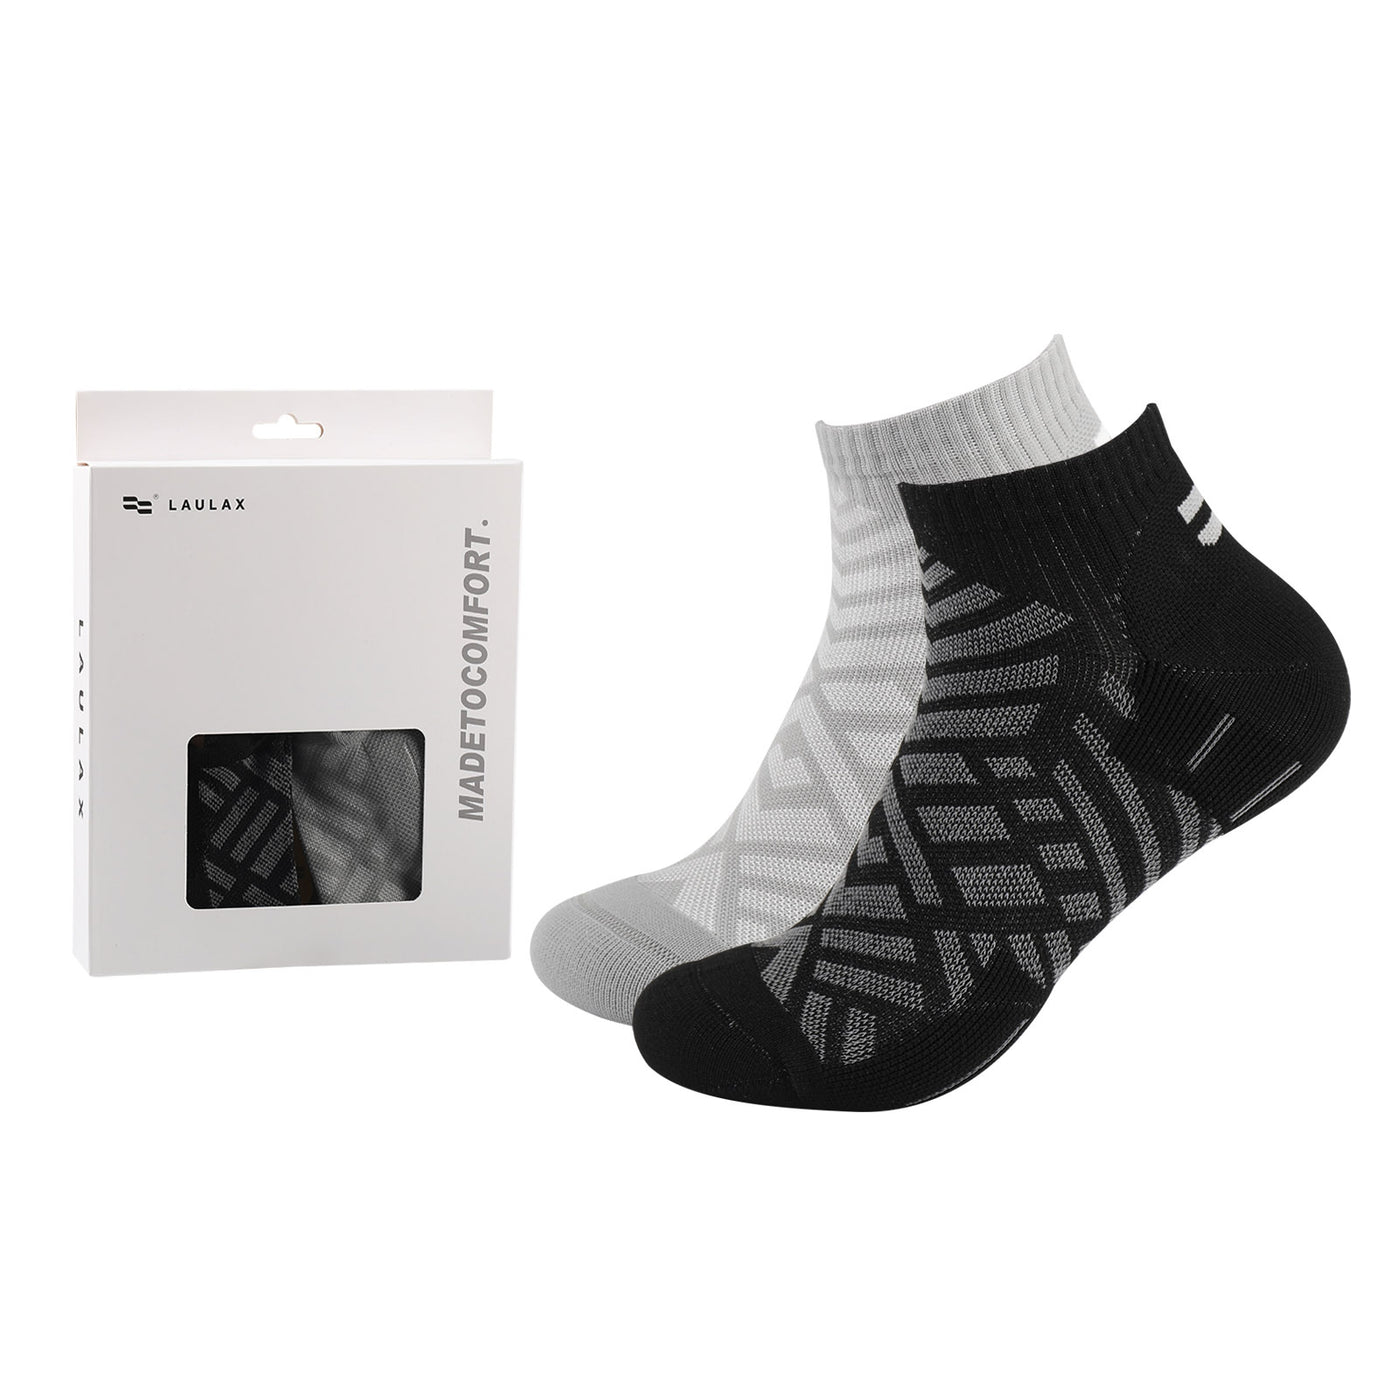 2 pares de calcetines tobilleros de senderismo para hombre de alta calidad, talla UK 7-11/Europa 40-46